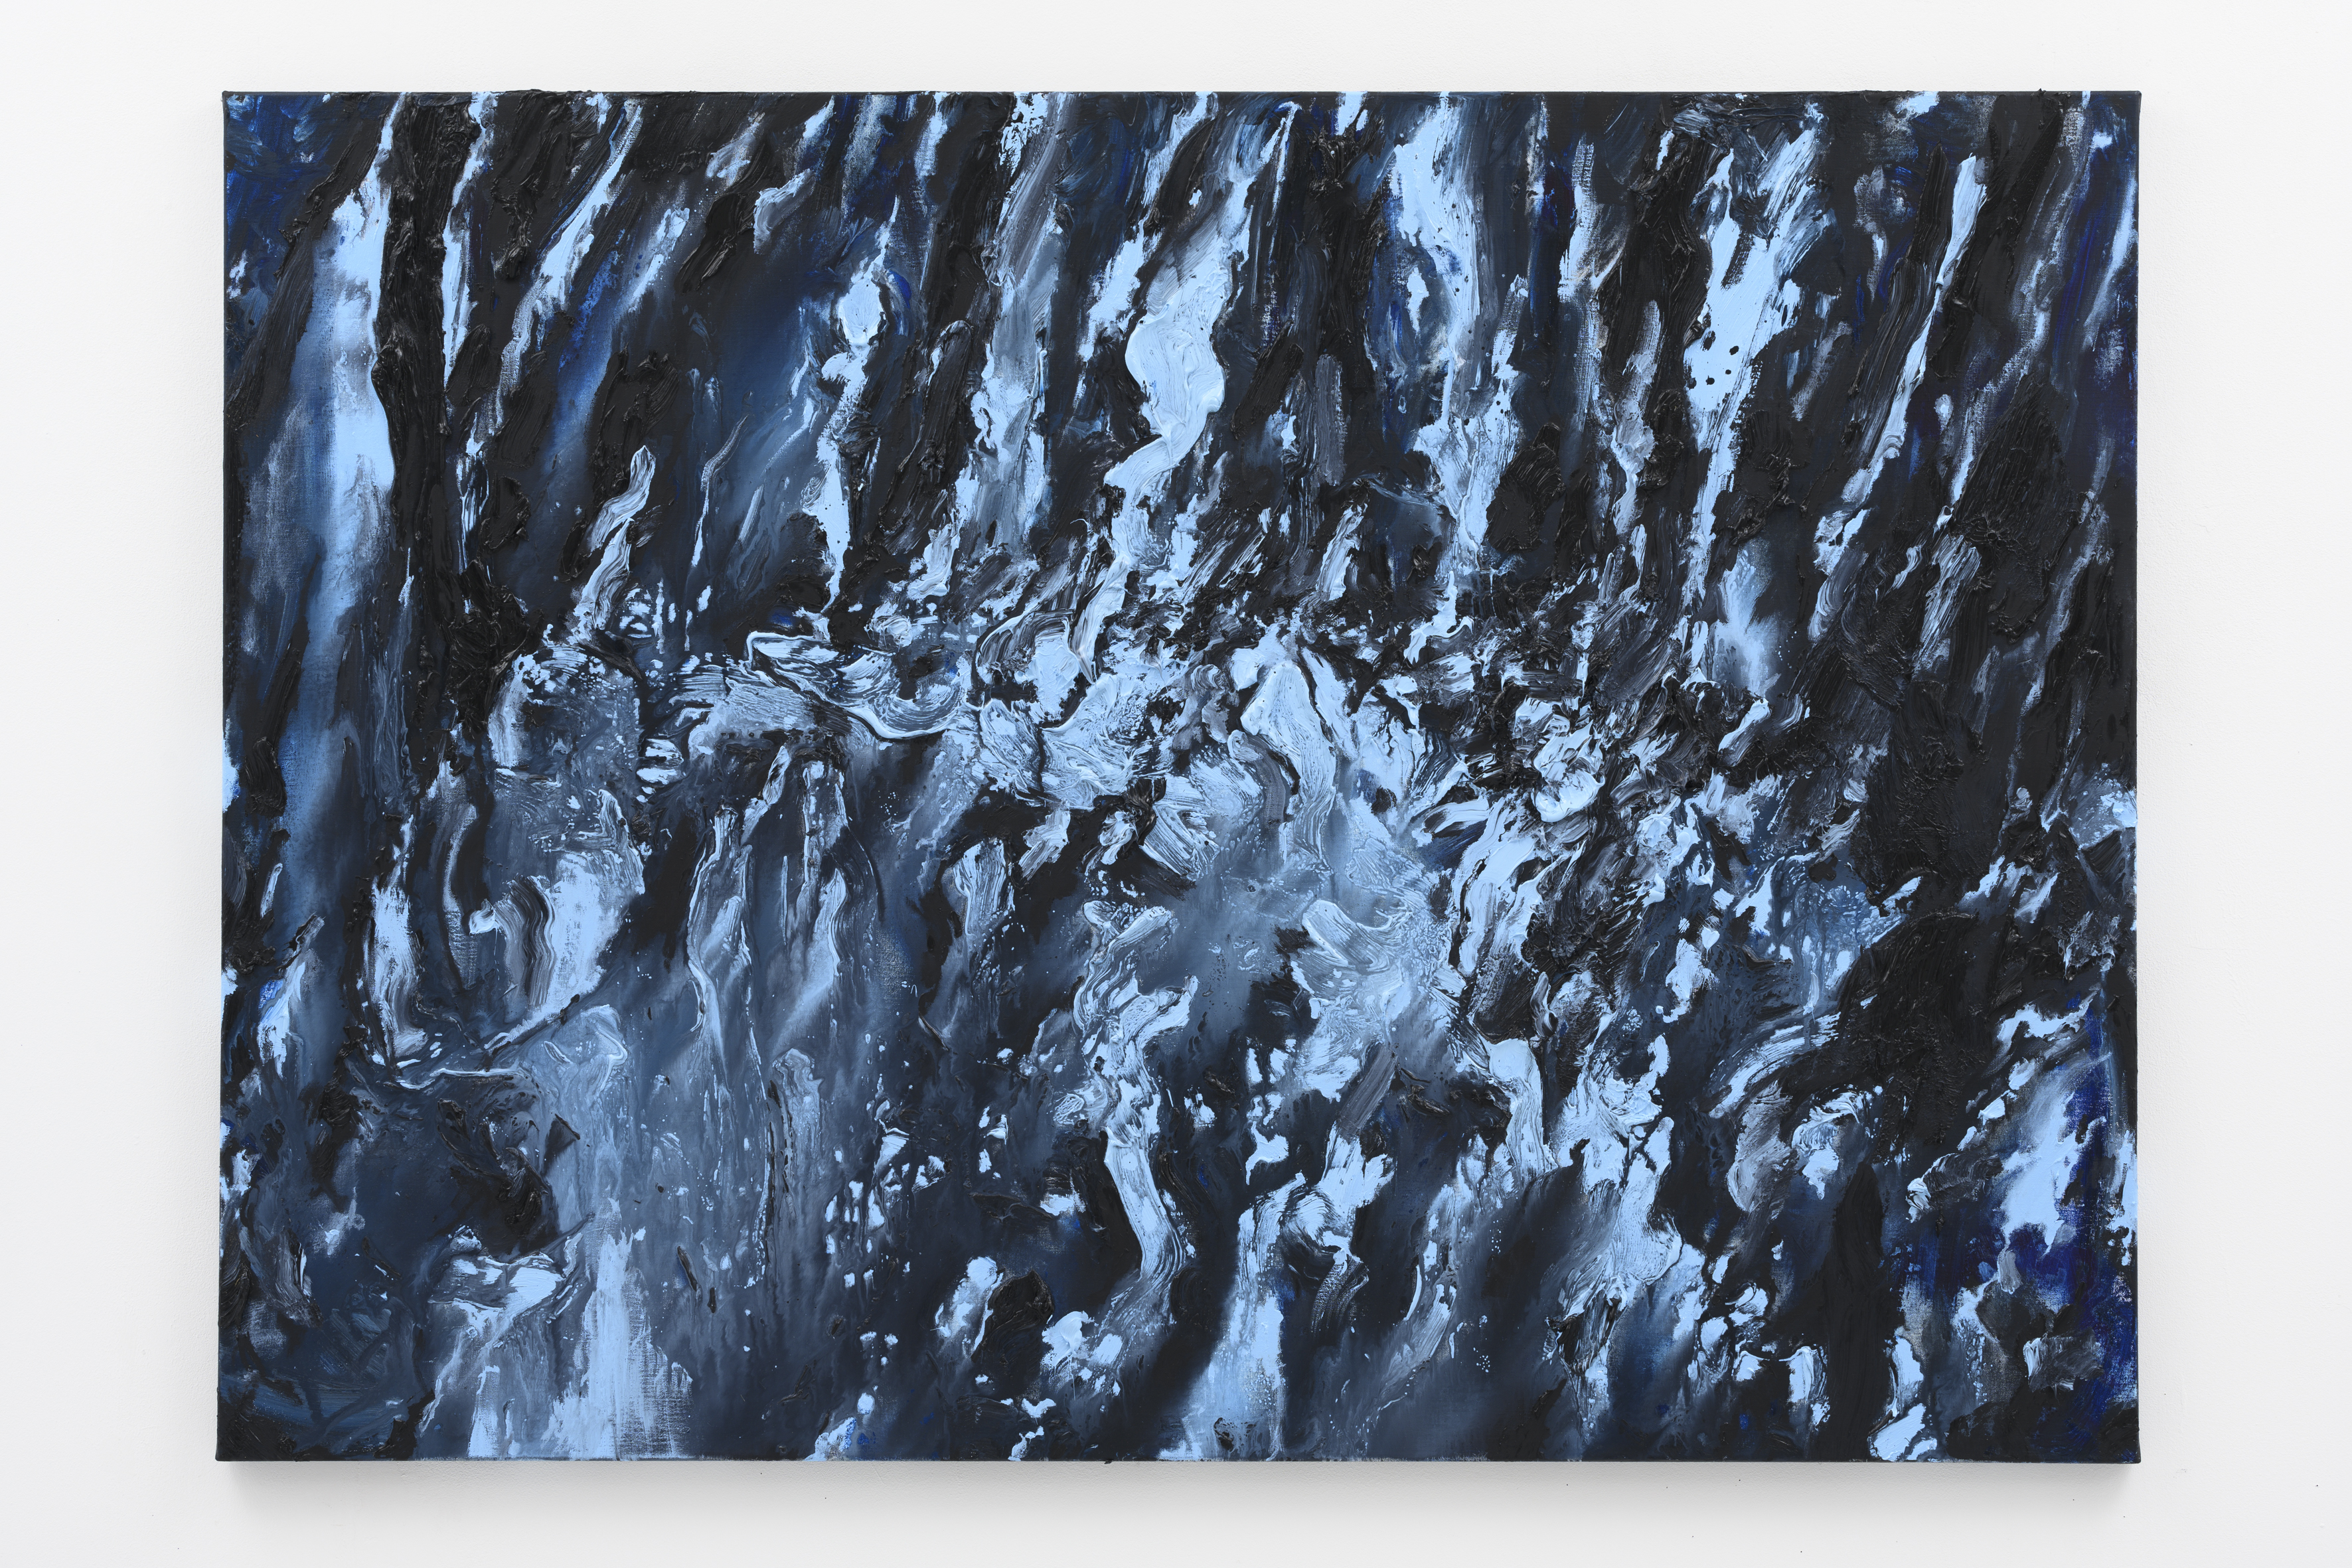 "Nocturnal Presences IV", 100 x 140 cm. oil on linen 2021  (Terug naar de bossen van toen)